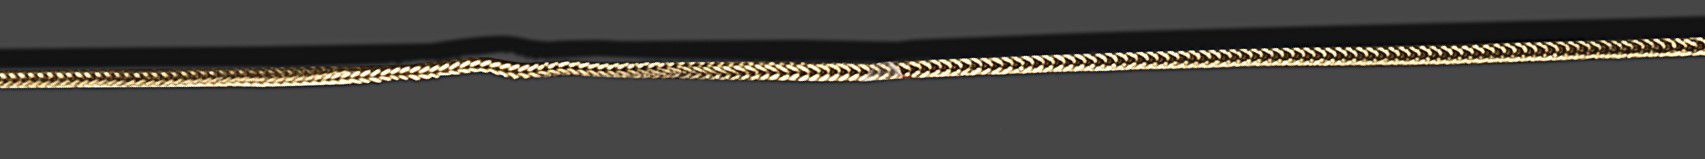 Null Halskette aus 18 Karat Gelbgold (750) mit Säulenmaschen.
Länge: 56 cm
Brutt&hellip;